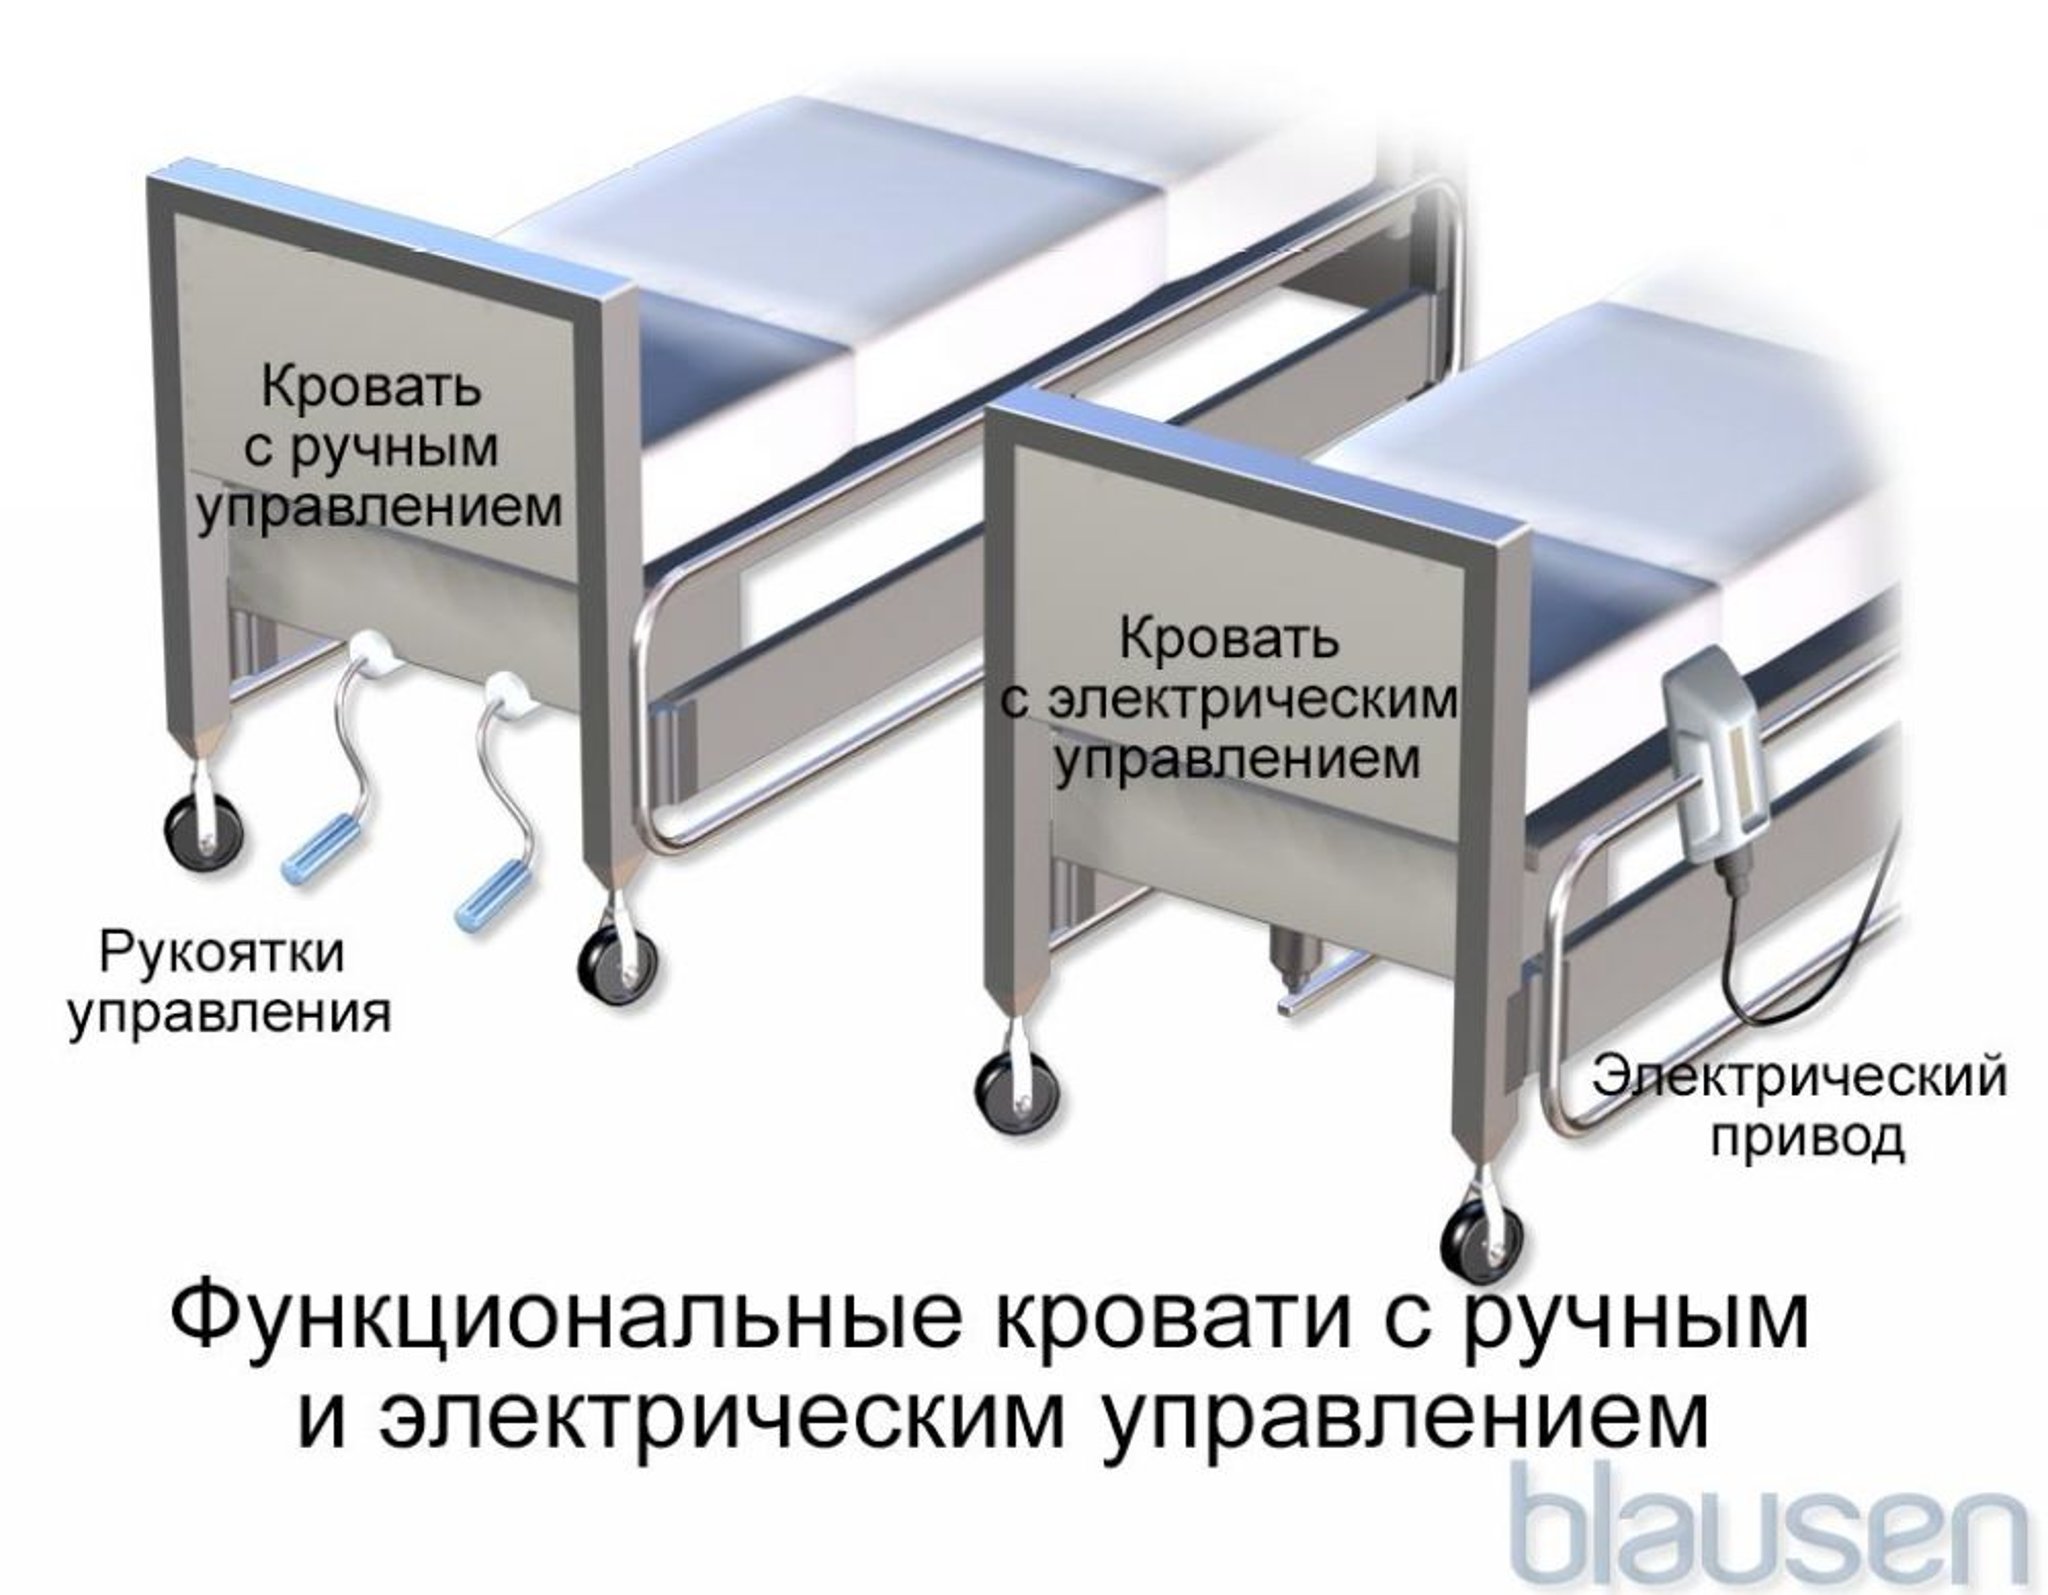 Функциональные кровати с ручным и электрическим управлением